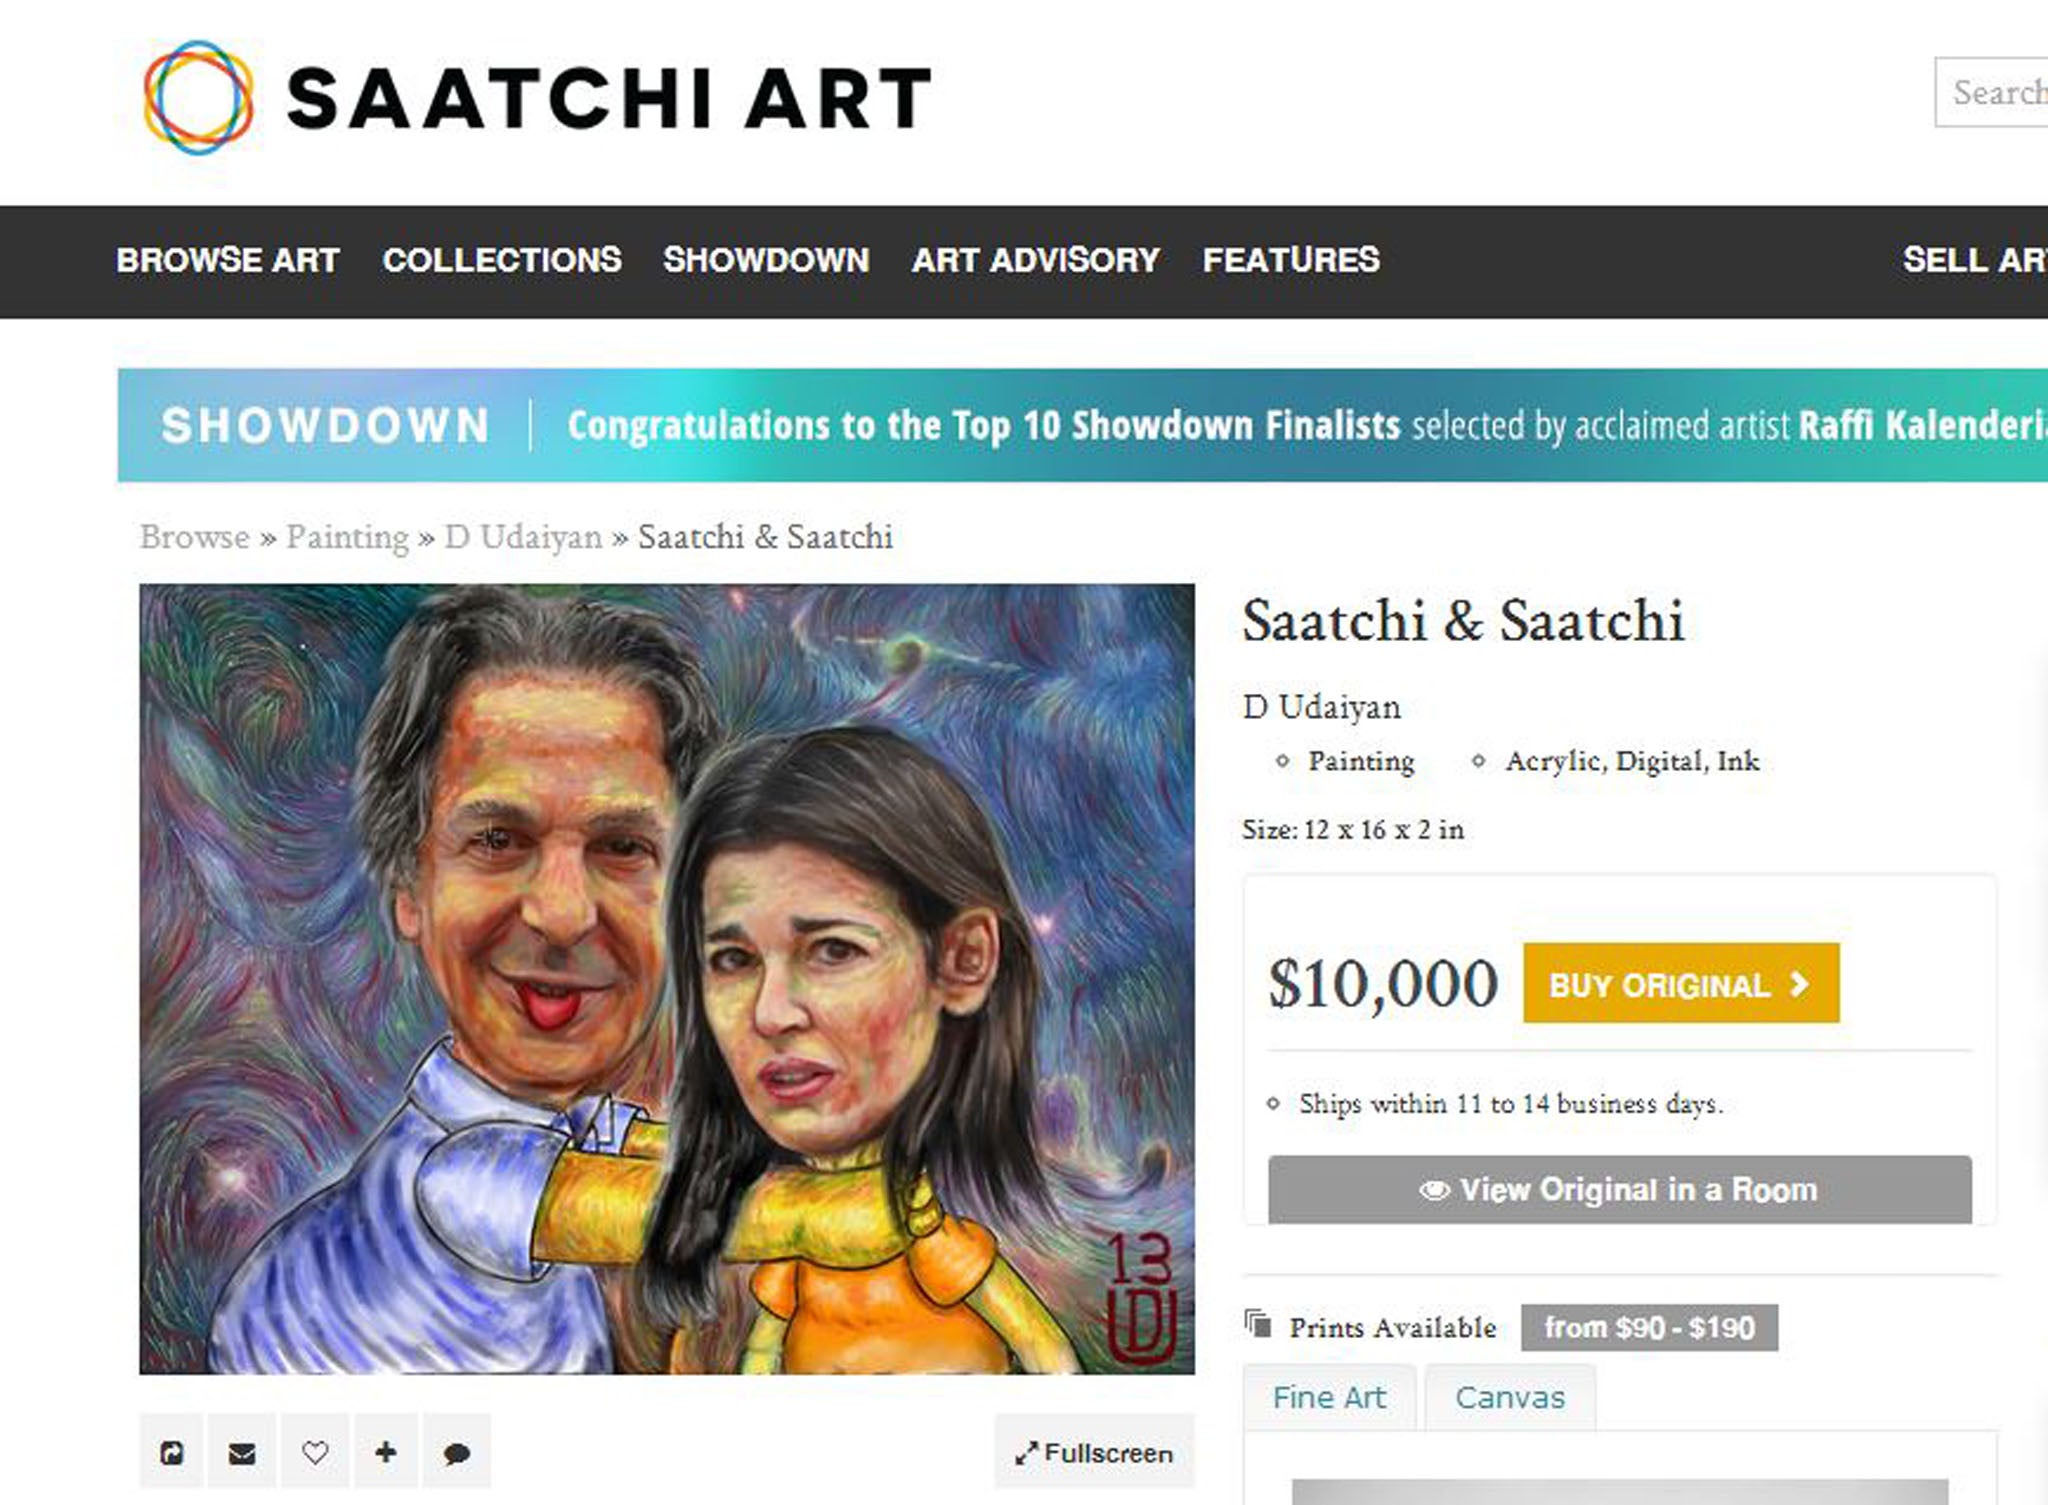 Saatchi & Saatchi by Darren Udaiyan